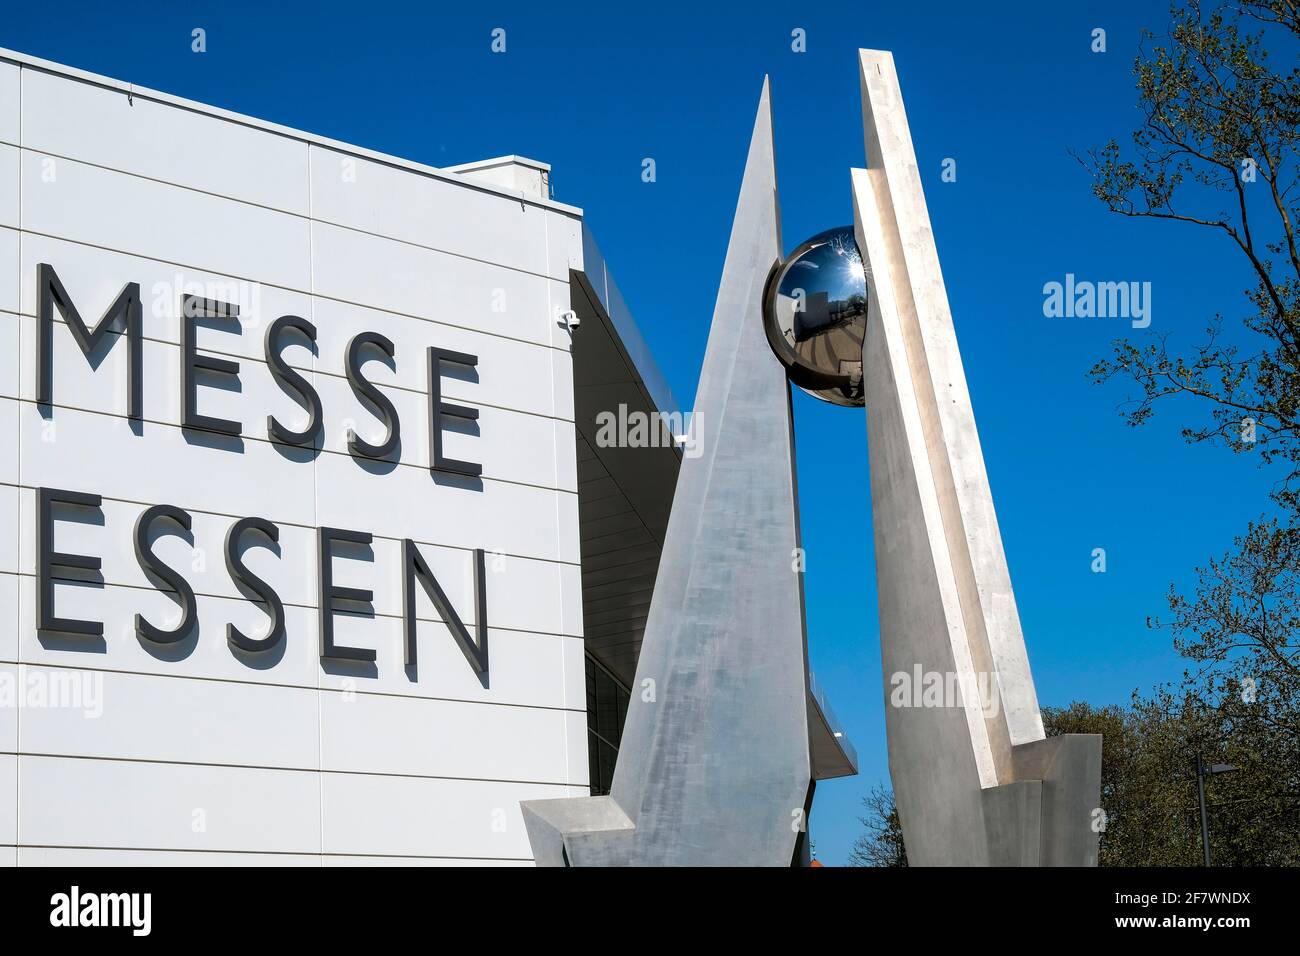 21.04.2020, Essen, Ruhrgebiet, Nordrhein-Westfalen, Deutschland - Stahlskulptur vor der Messe Essen am neuen Eingangsgebaeude in Essen-Ruettenscheid Stock Photo